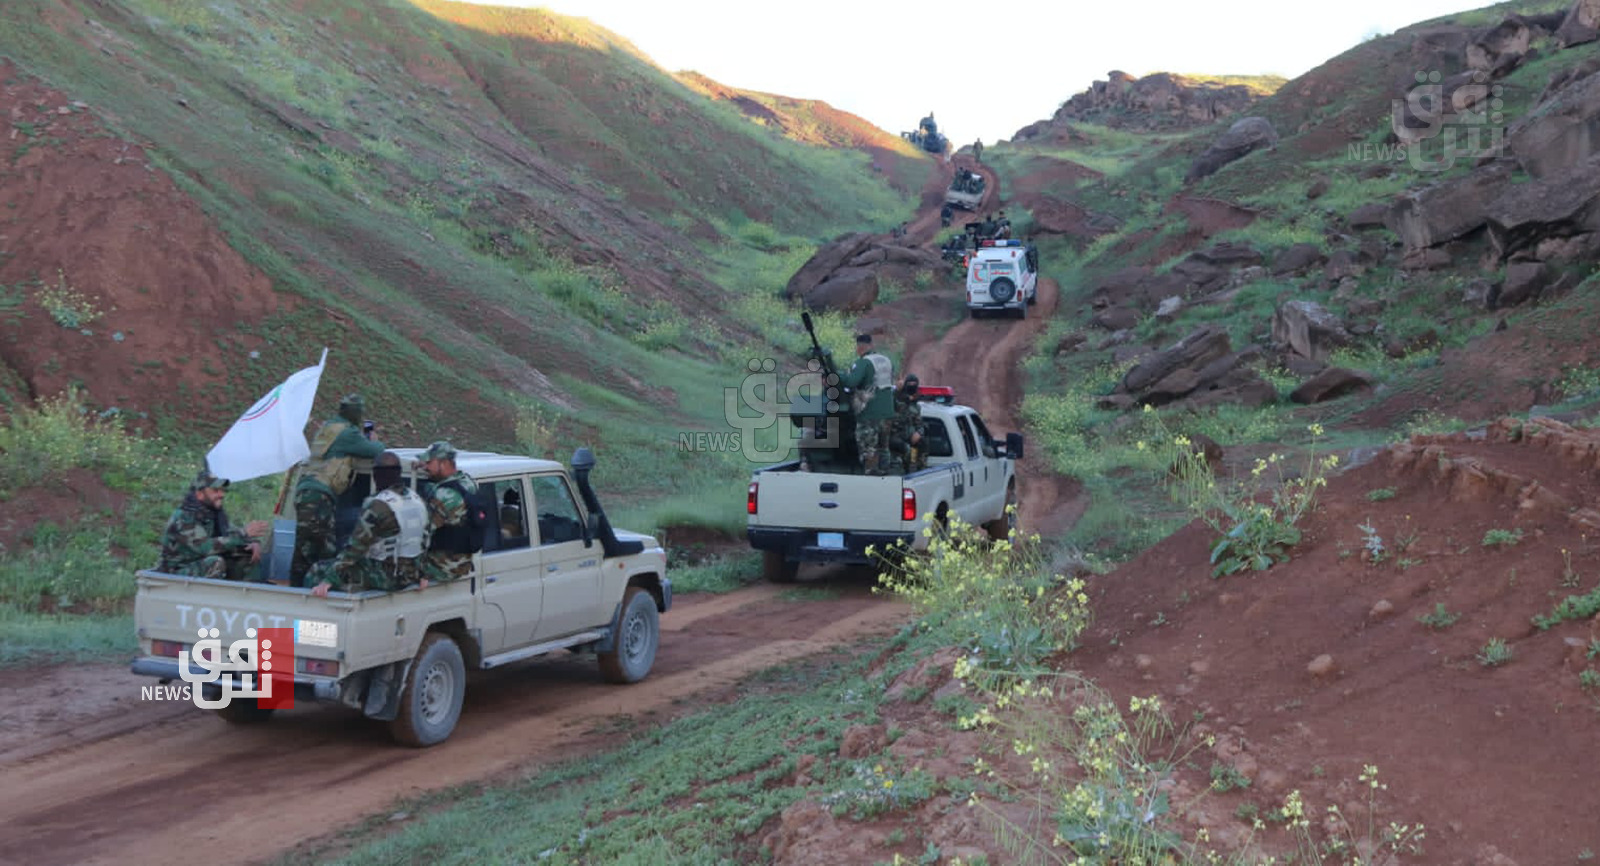 الأمن يلاحق منطلقات داعش عند حدود كوردستان والبيشمركة تشكل خطاً لـ"اصطياد الفارين" (صور)